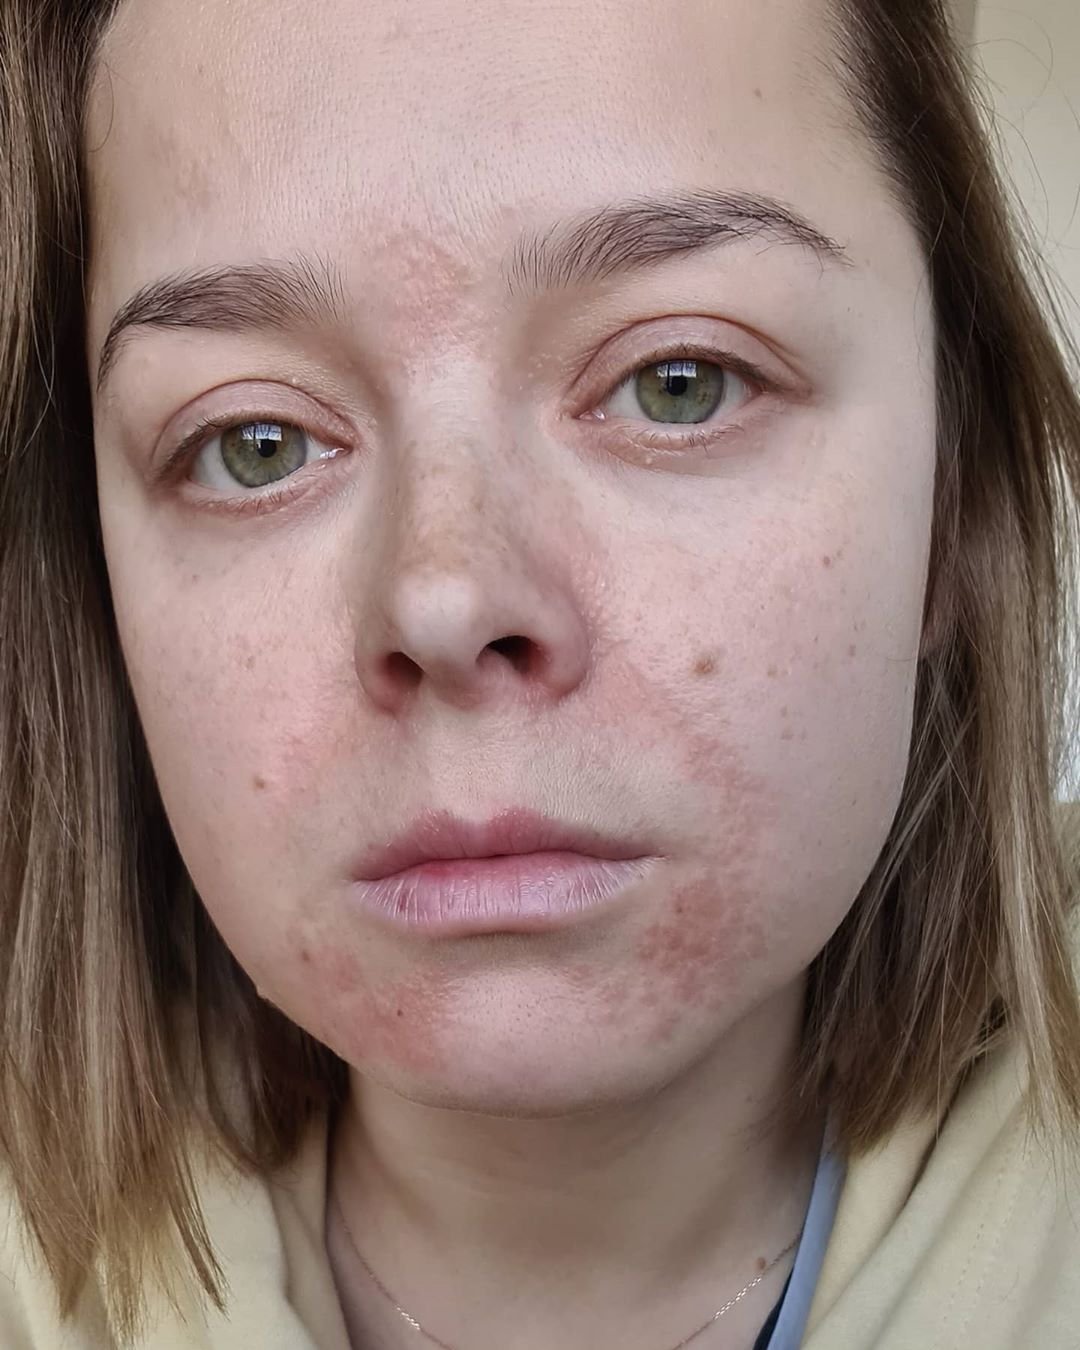 Наталья Медведева показала лицо, обезображенное хронической болезнью